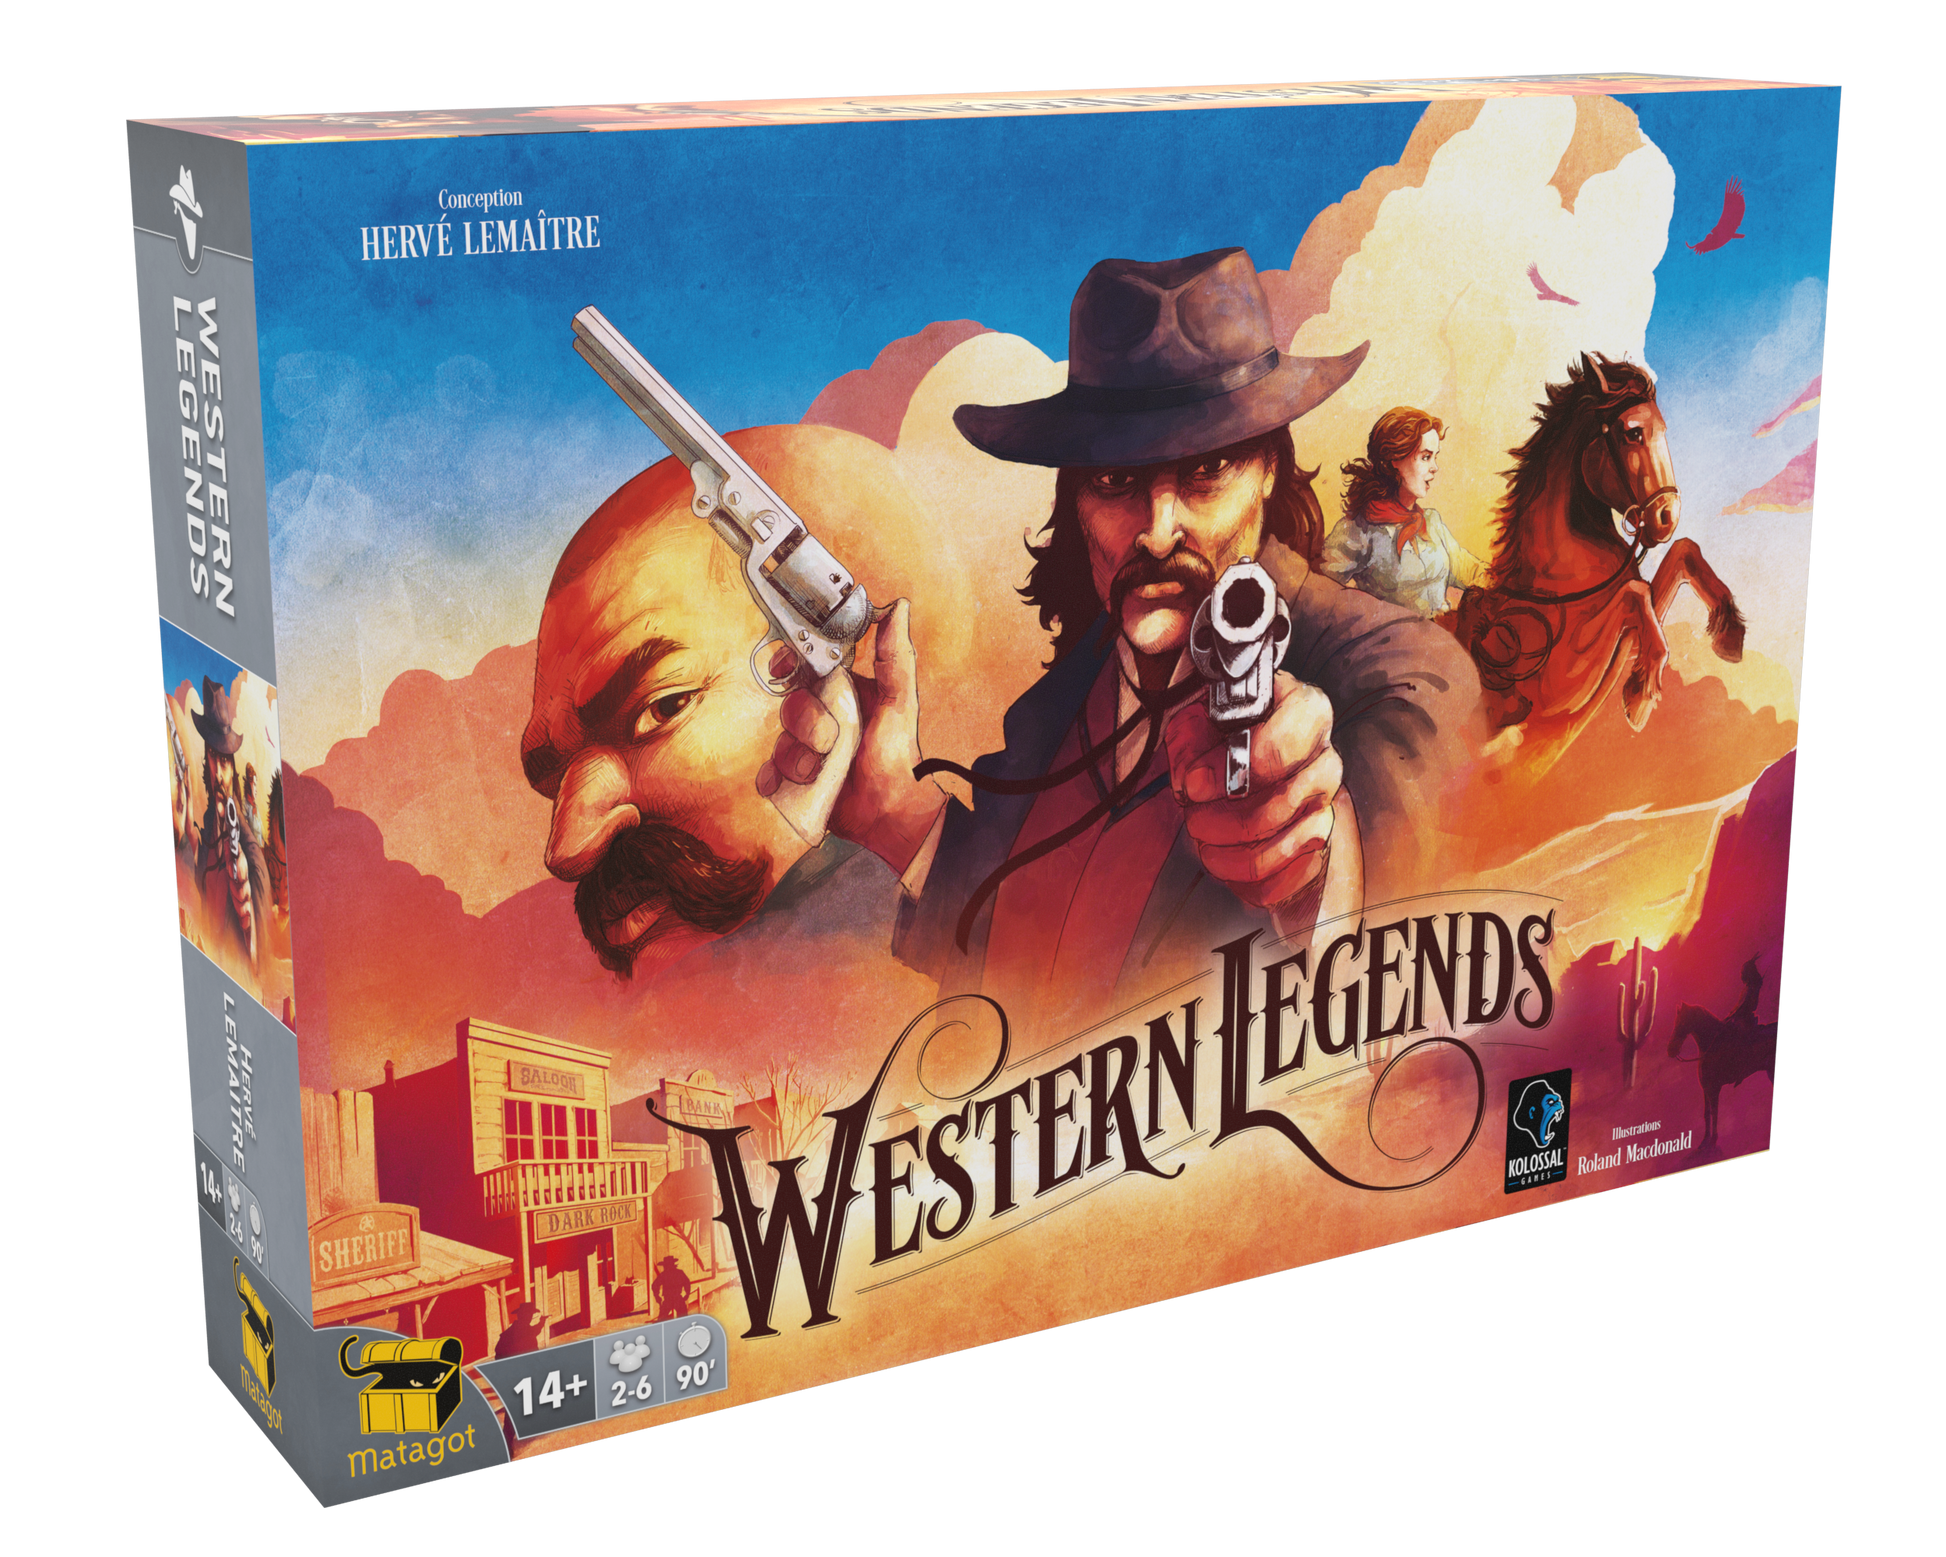 Western legends - Version française